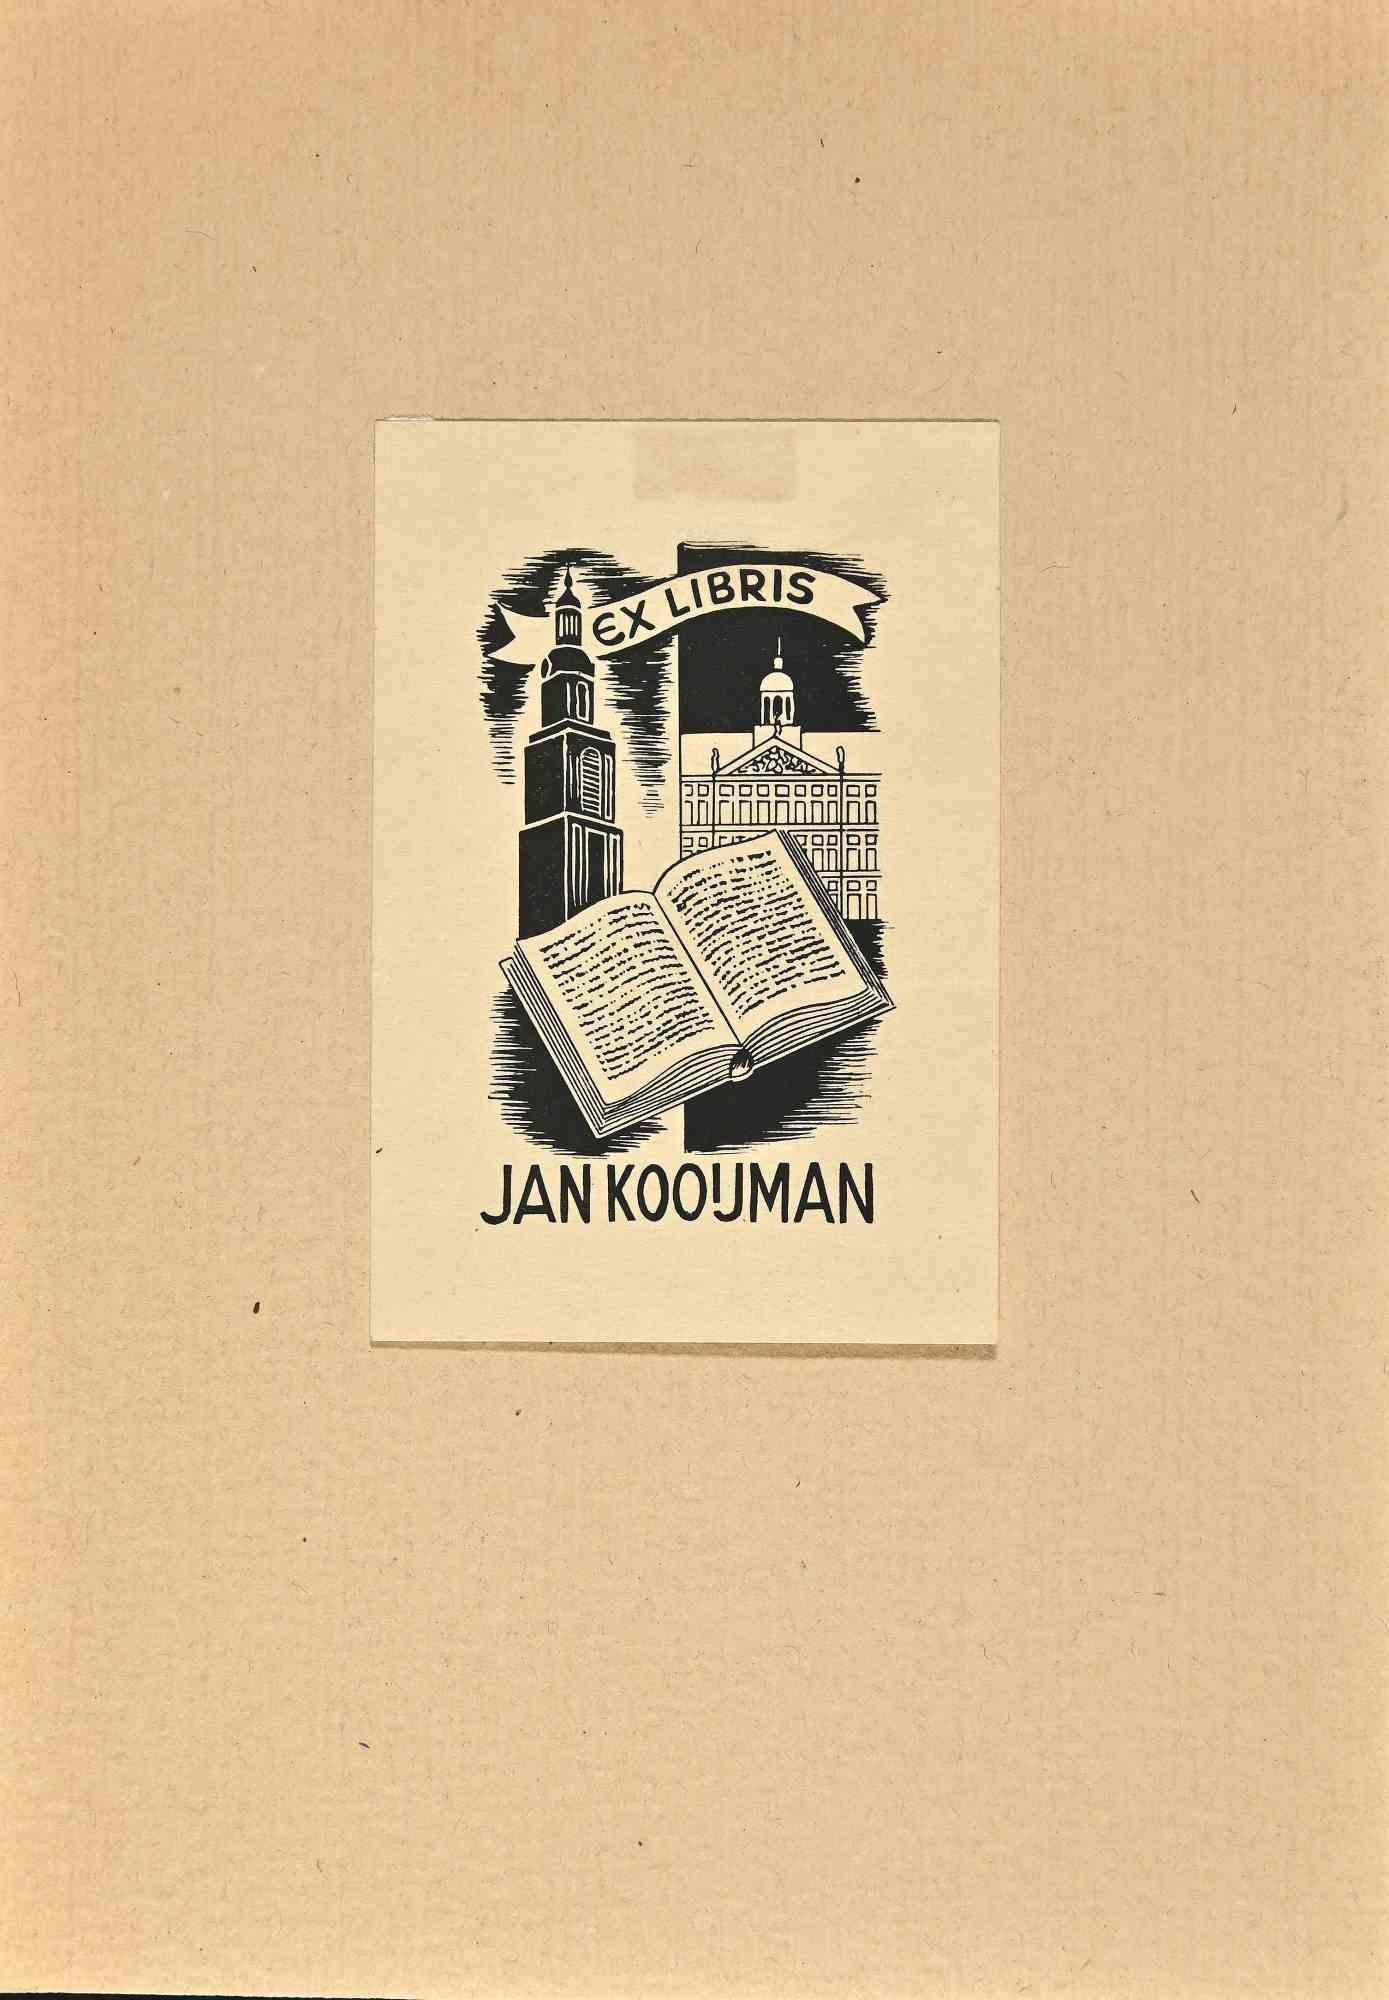  Ex Libris de Jan Koouman, gravure sur bois, milieu du 20e siècle